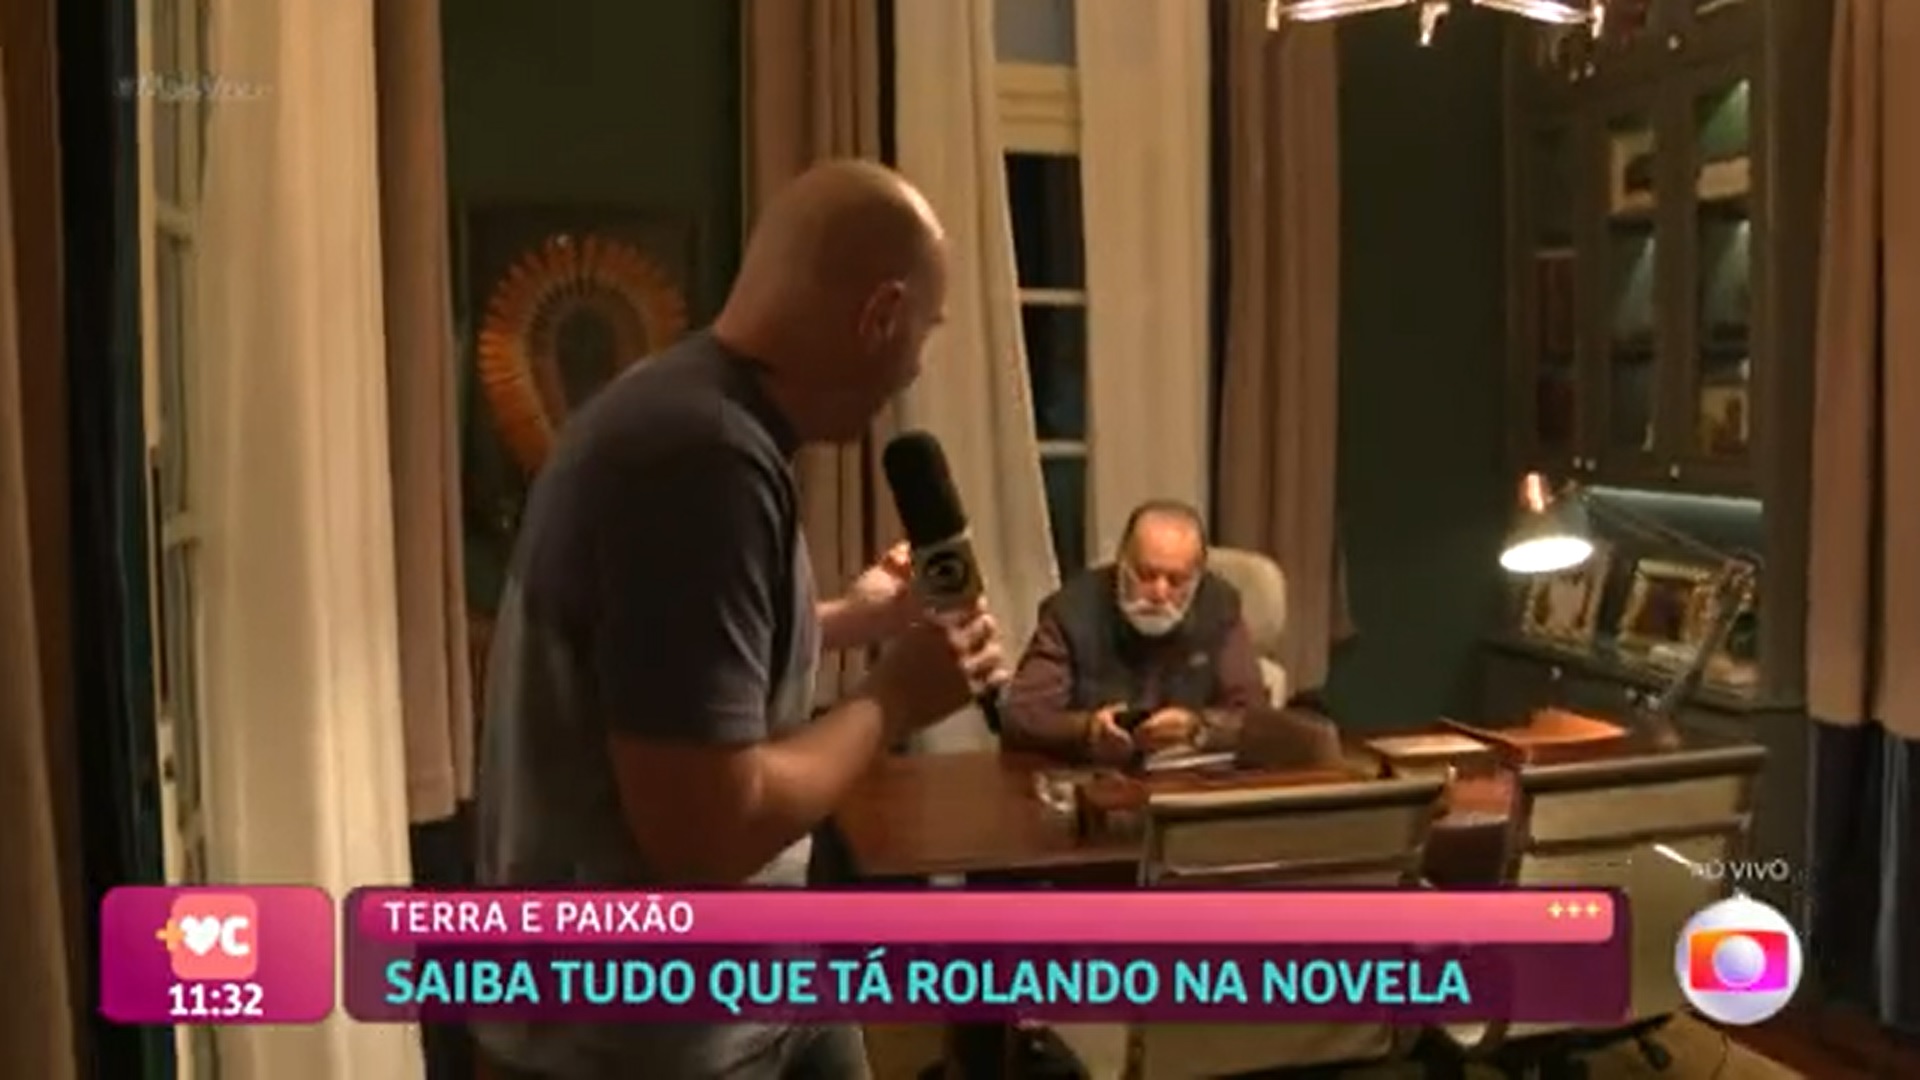 Gente! Repórter do 'Mais Você' flagra Tony Ramos em momento incriminador nos bastidores da Globo